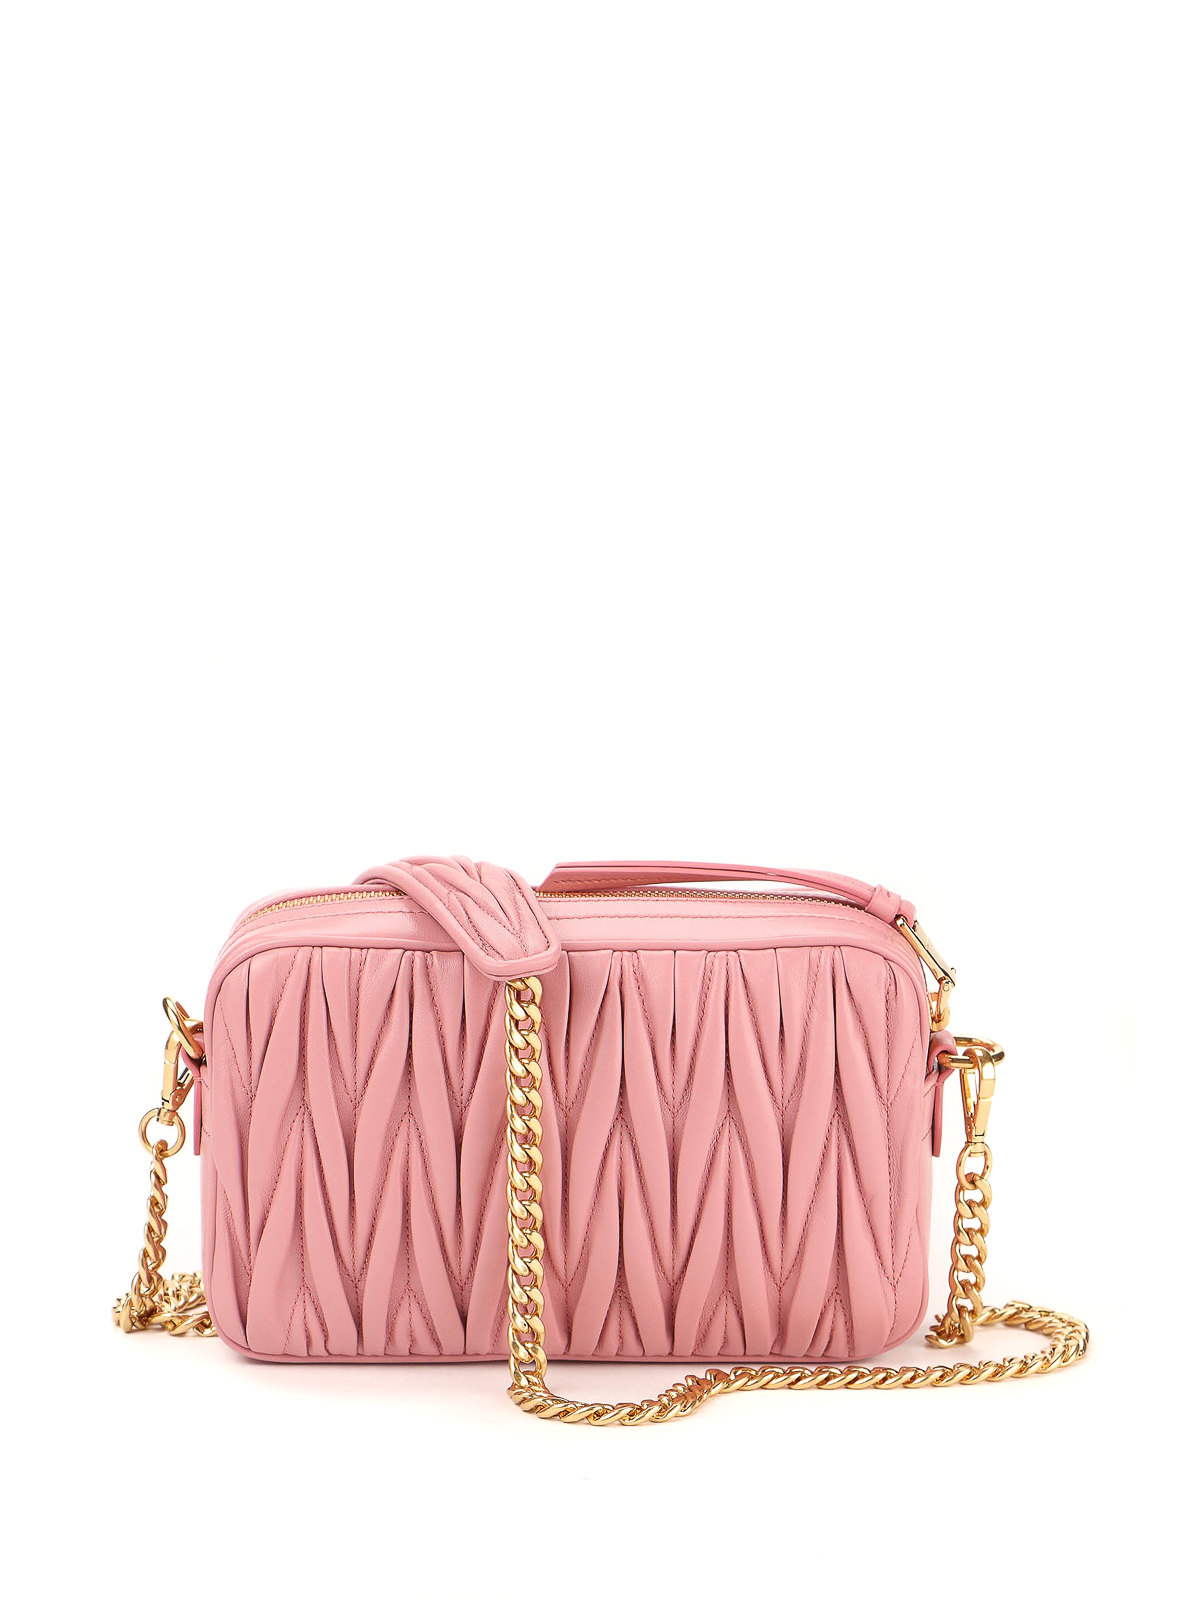 MIU MIU, Fuchsia Women's Handbag